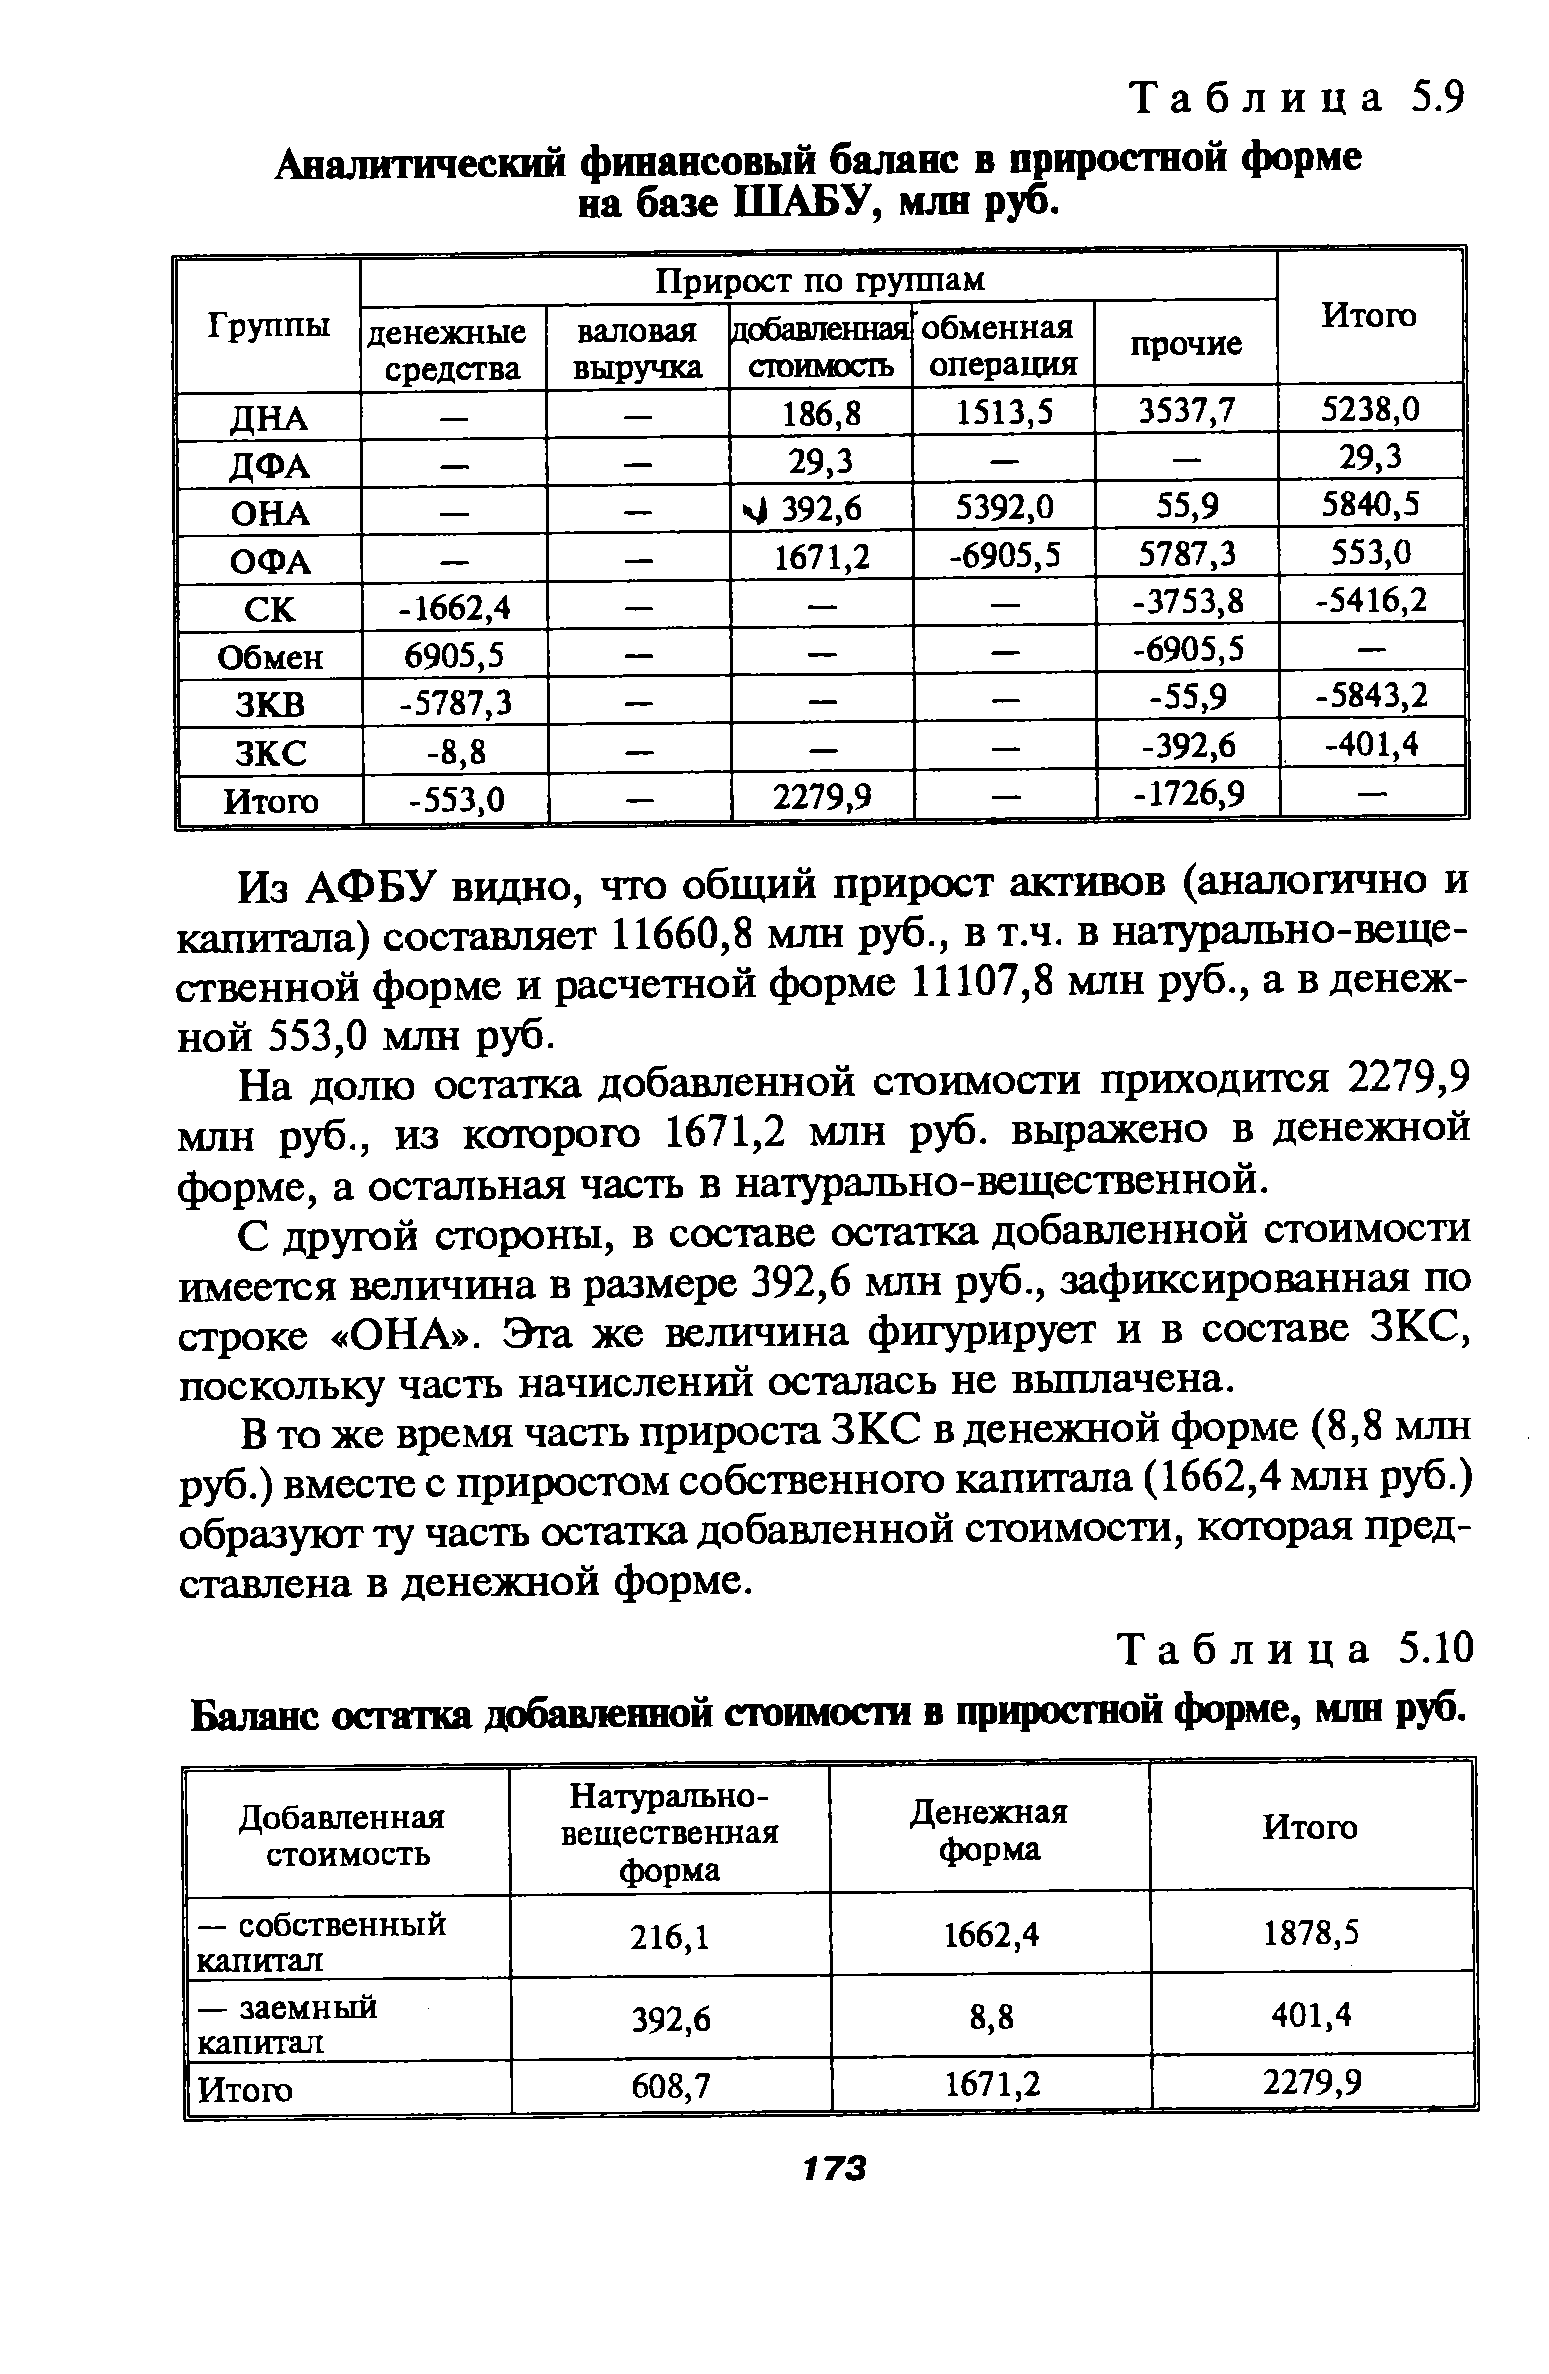 Таблица 5.10 Баланс остатка <a href="/info/88502">добавленной стоимости</a> в приростной форме, млн руб.
